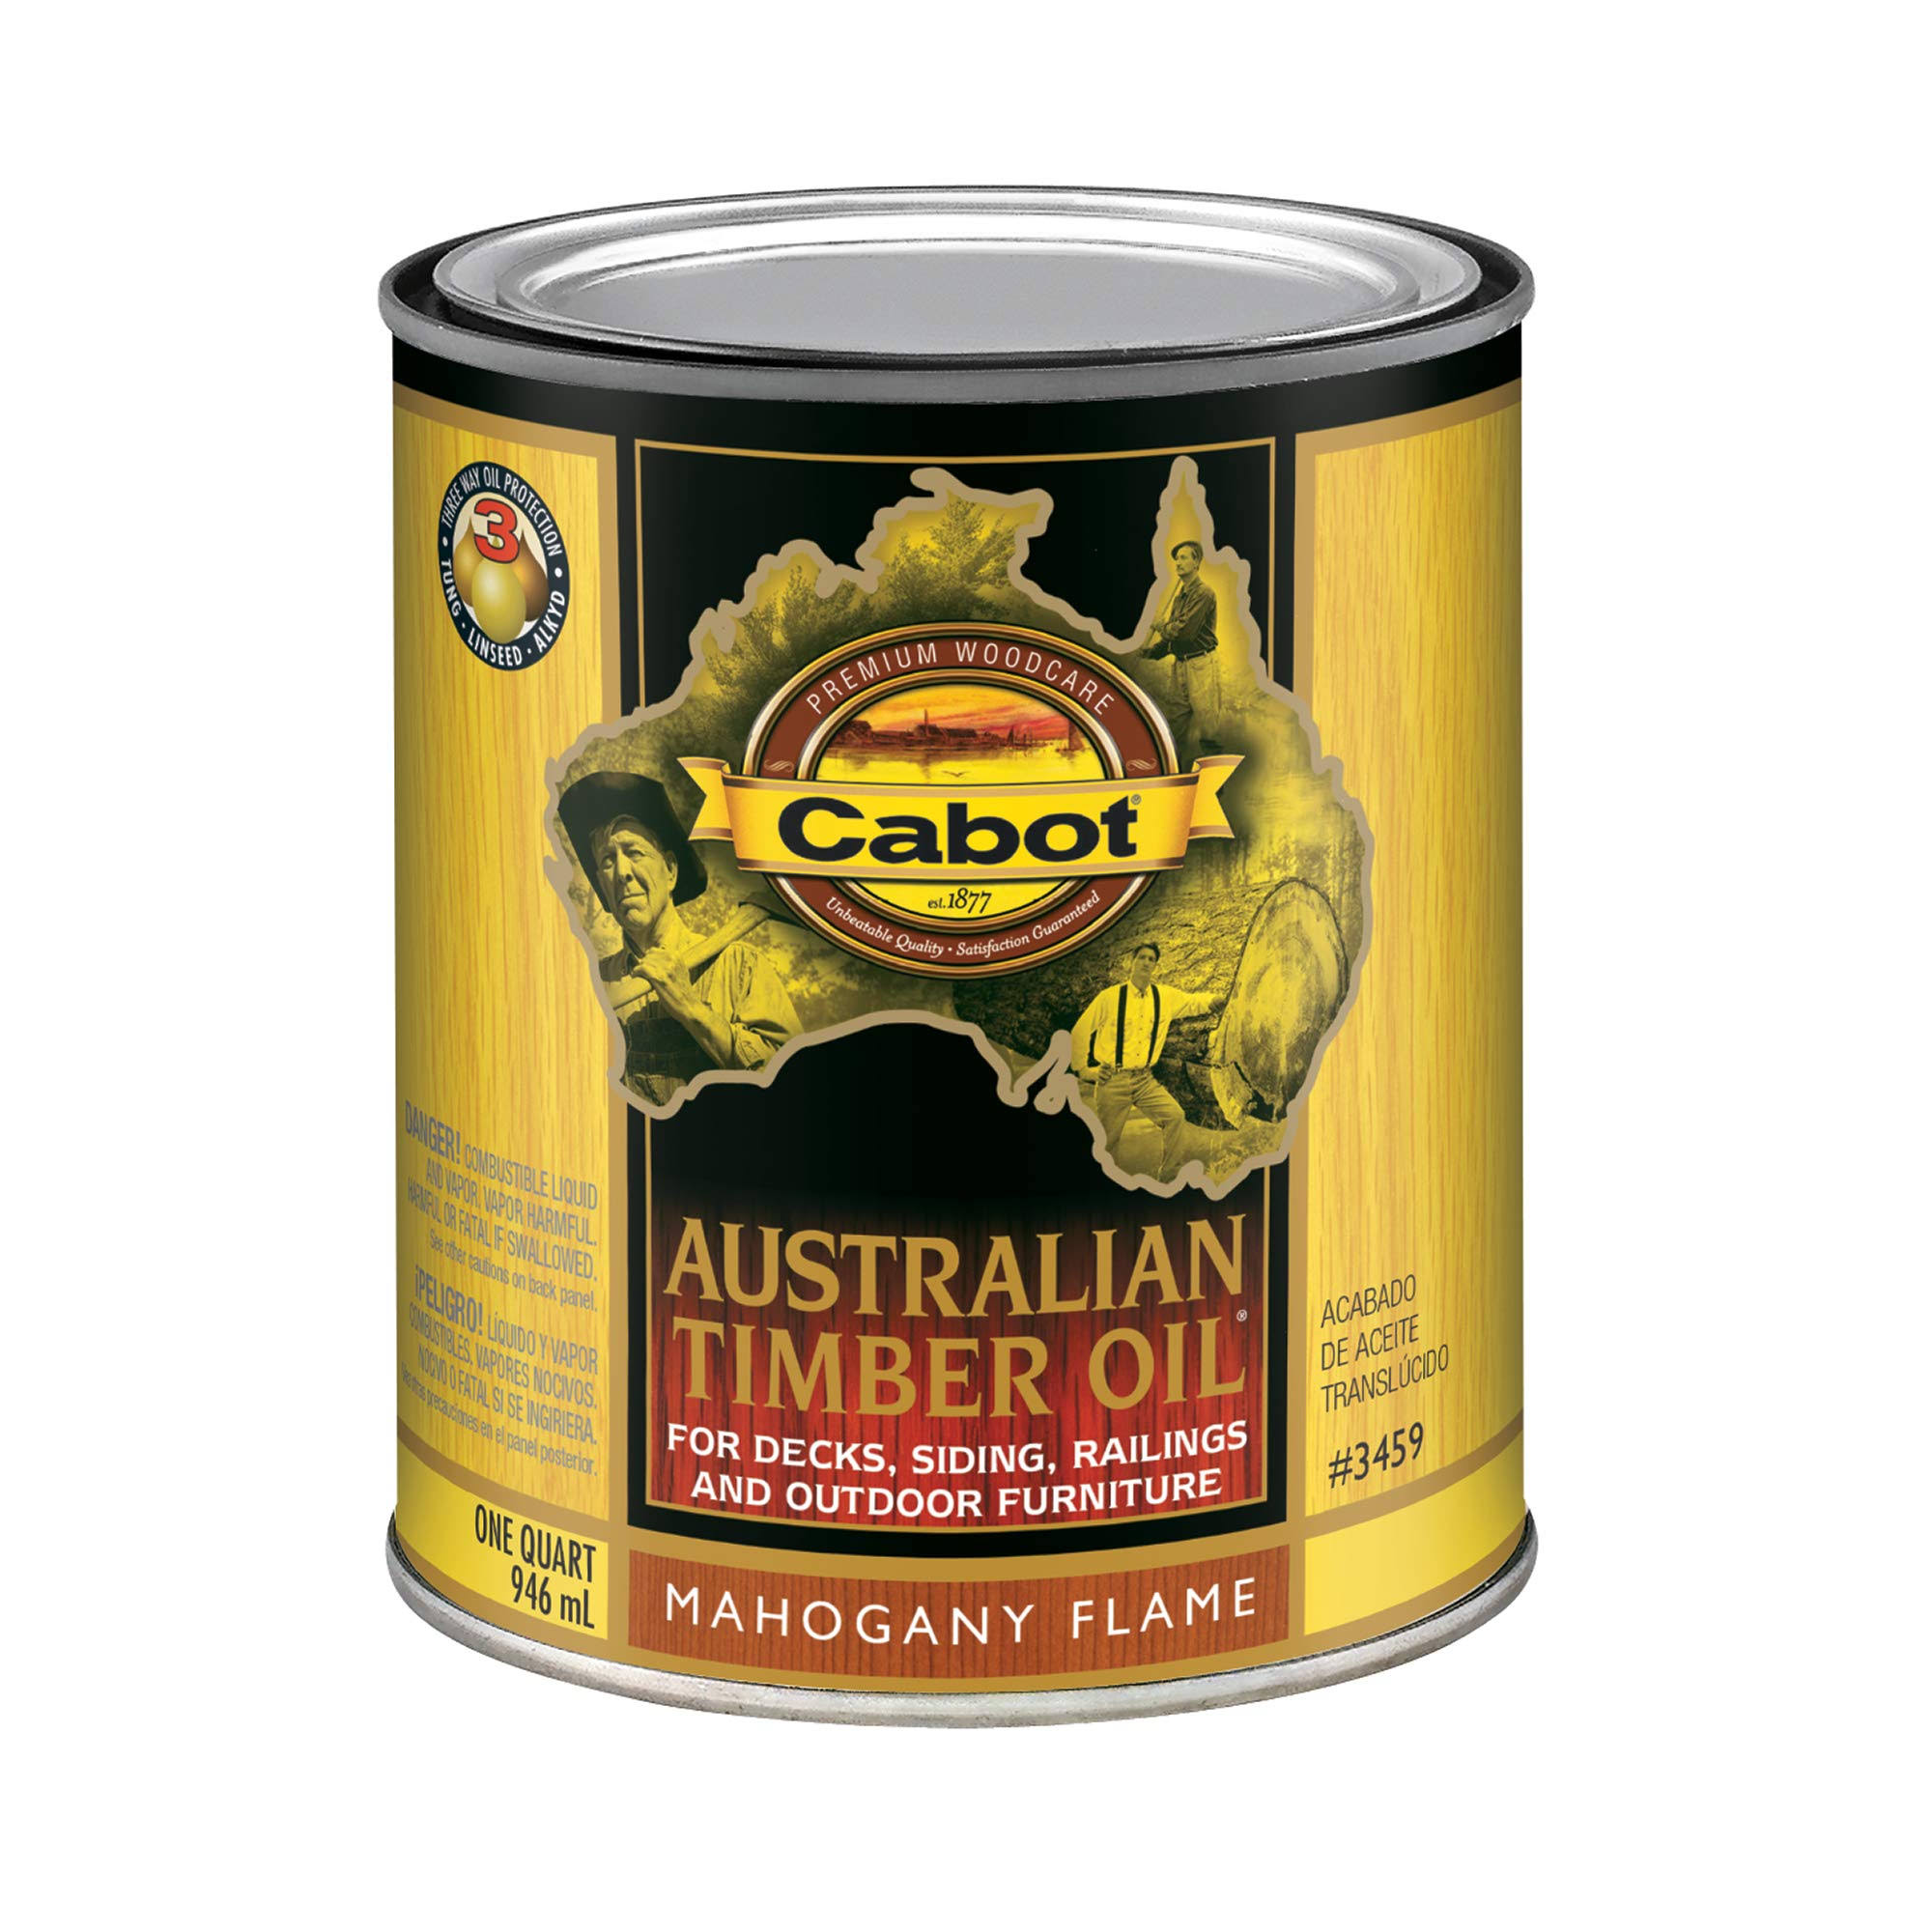 Cabot Australian Timber Oil - Mahogany Flame, 1qt